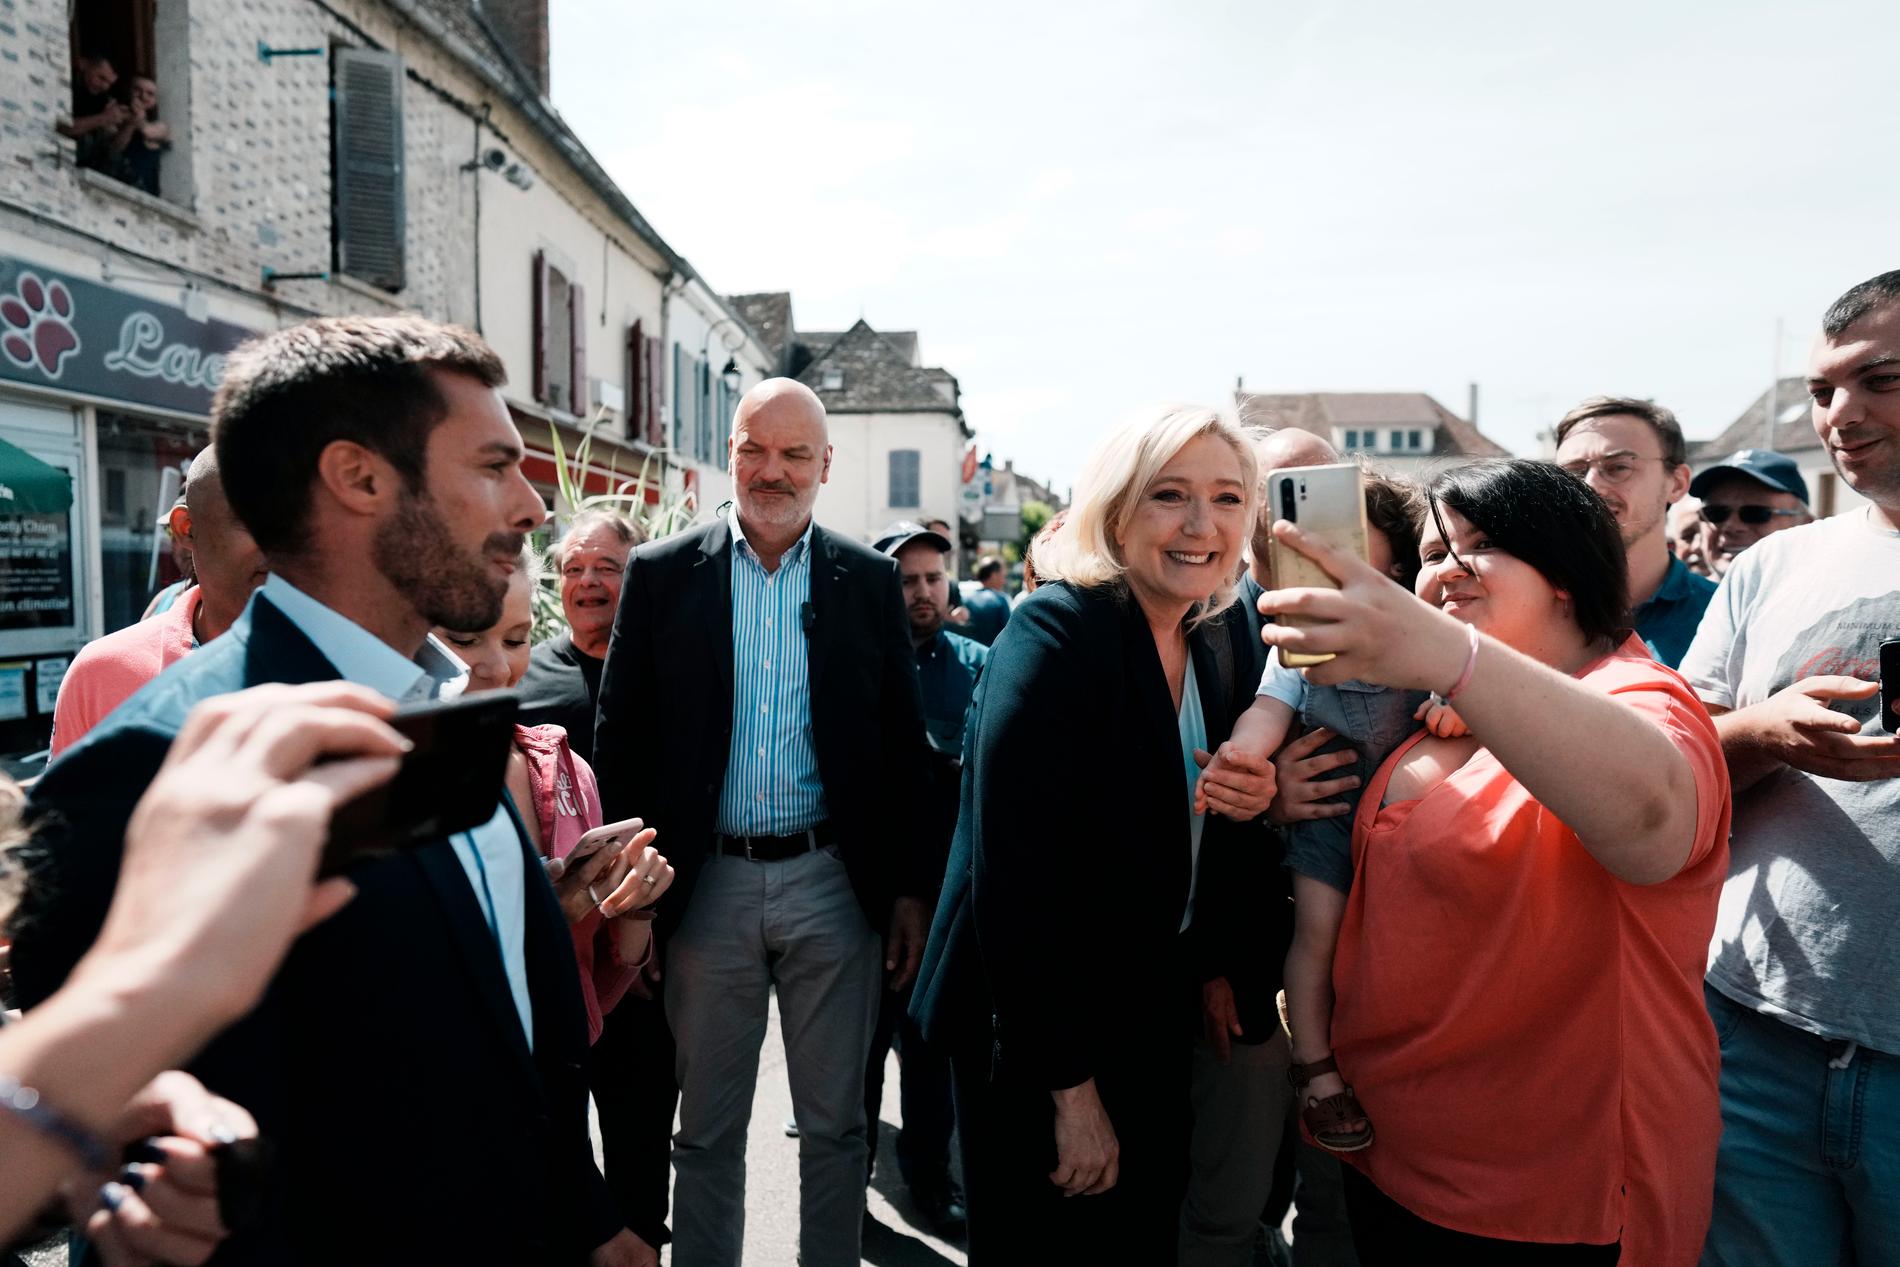 Nationalistledaren Marine Le Pen förlorade ett presidentval igen, men väljarstödet fortsätter att växa i parlamentsvalet. Frågan är hur långt det räcker. Här poserar hon tillsammans med en väljare i Pont-sur-Yonne i östra Frankrike, i tisdags.